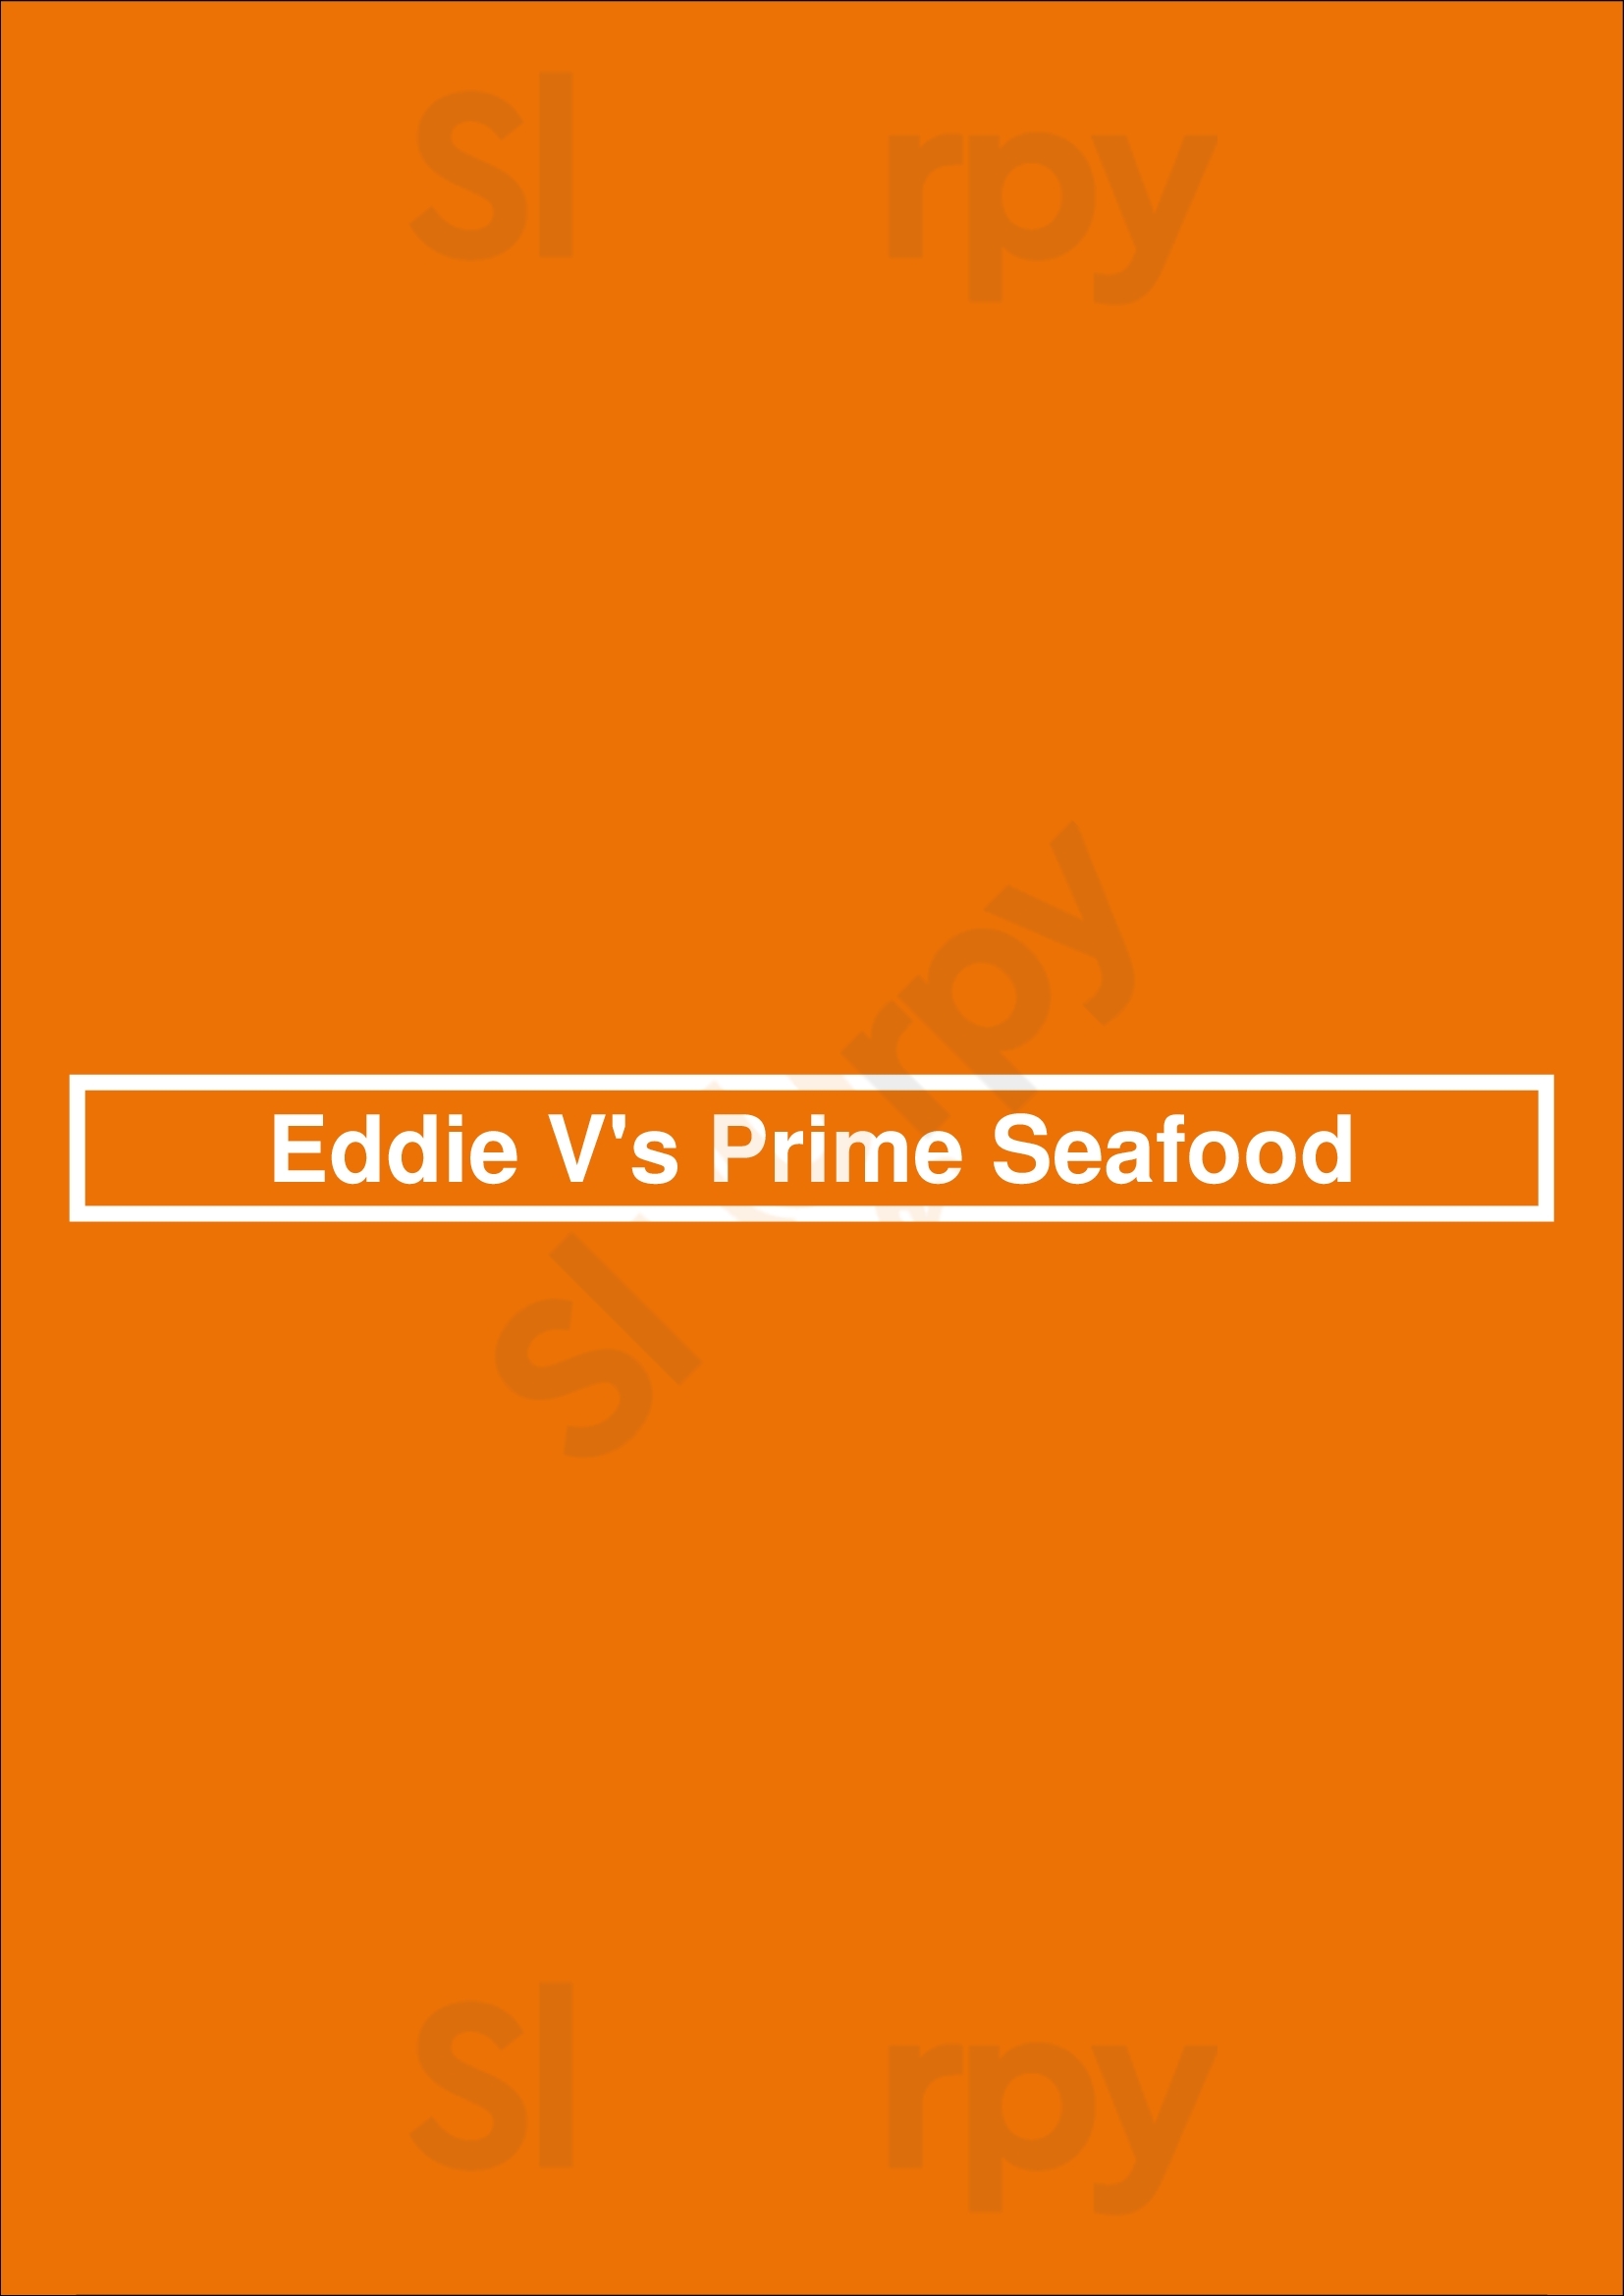 Eddie V's Prime Seafood San Antonio Menu - 1